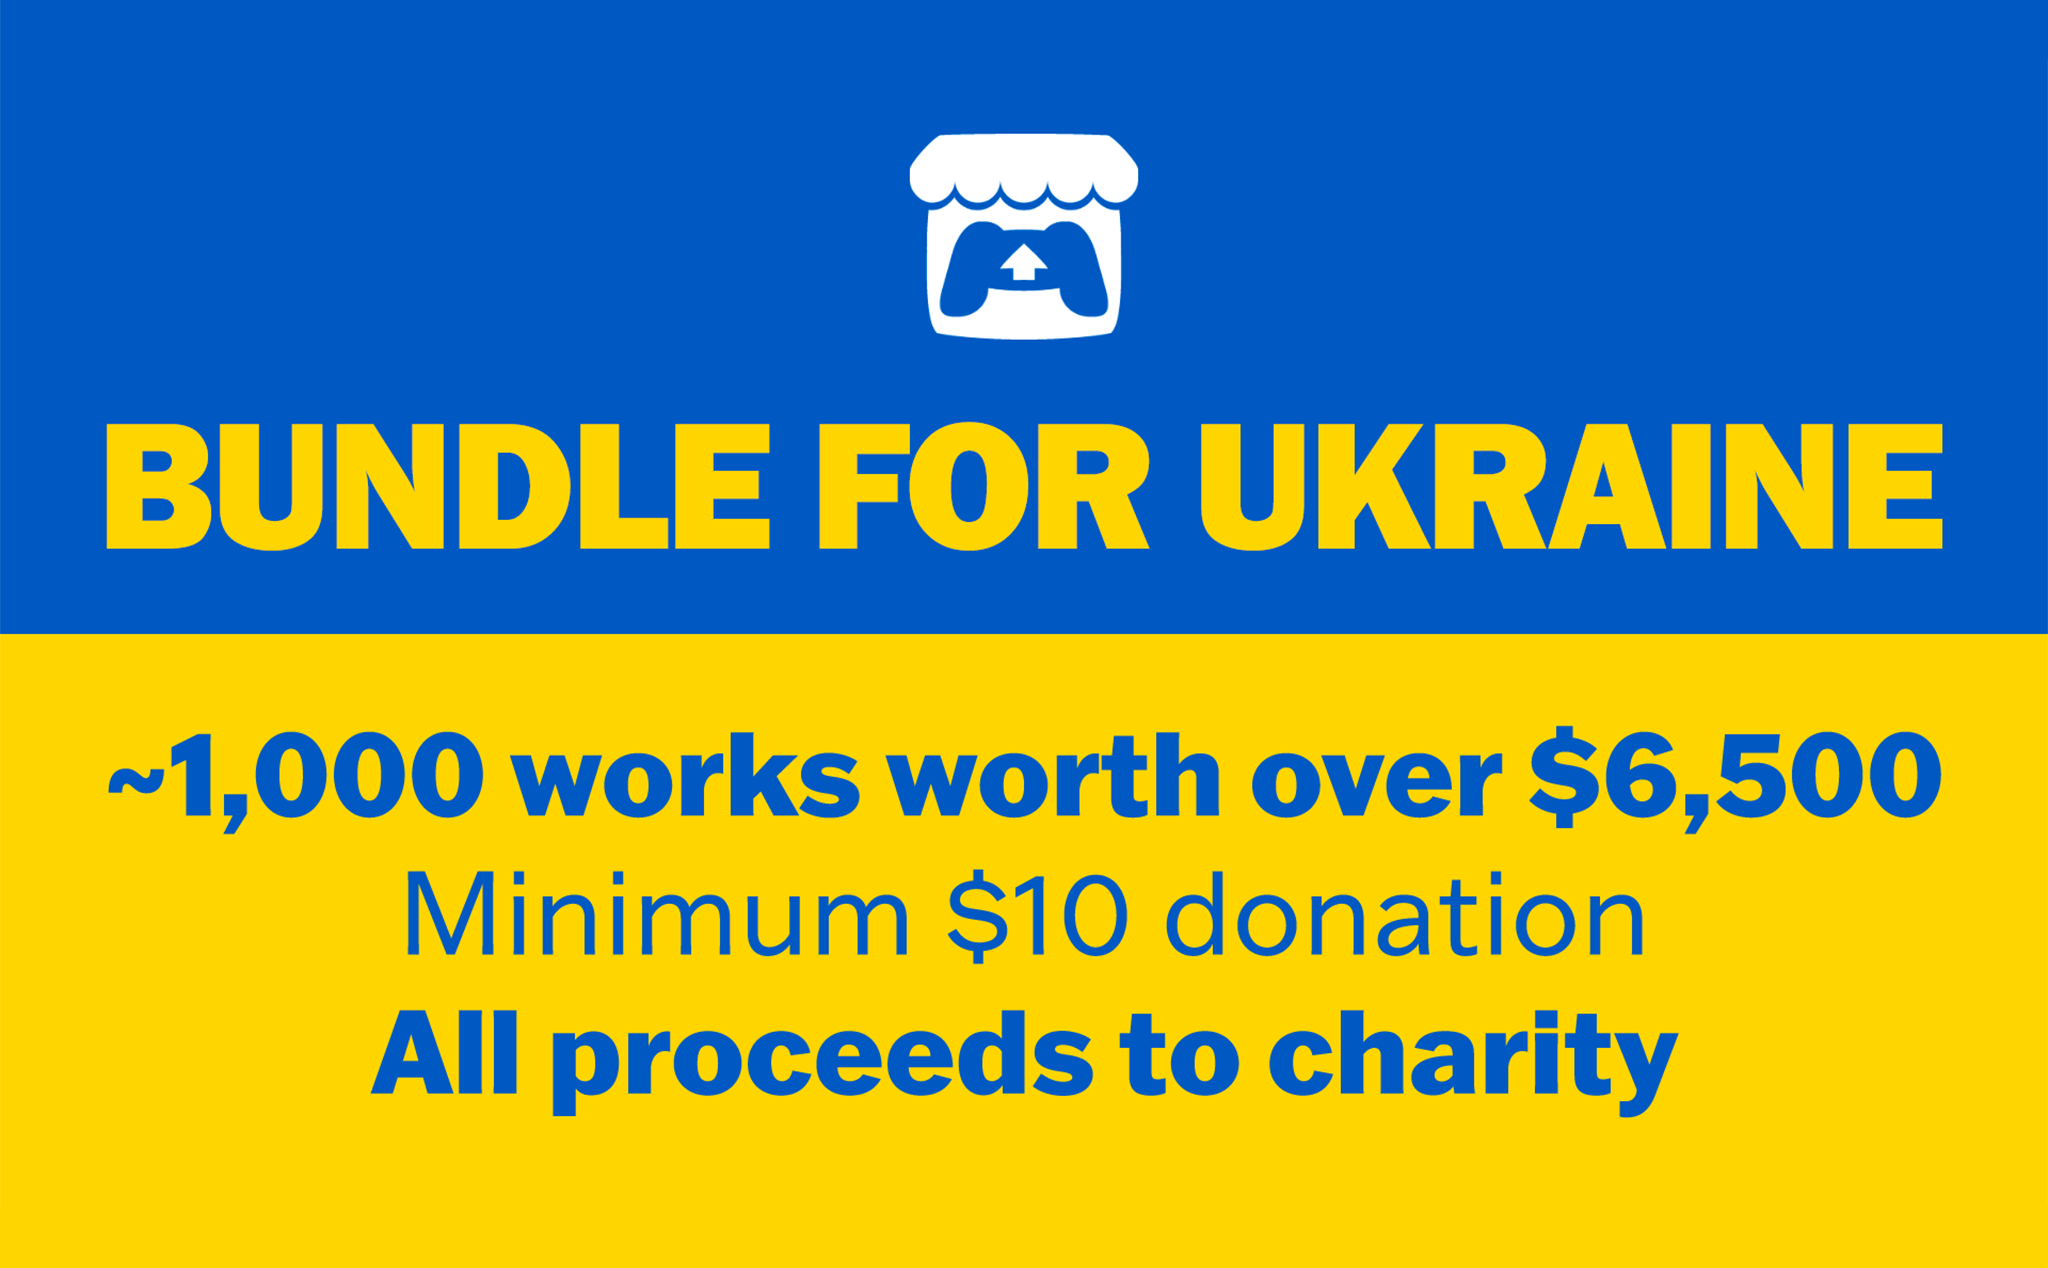 Gói indie game đặc biệt đã thu hút được gần 4 triệu USD cứu trợ cho Ukraine